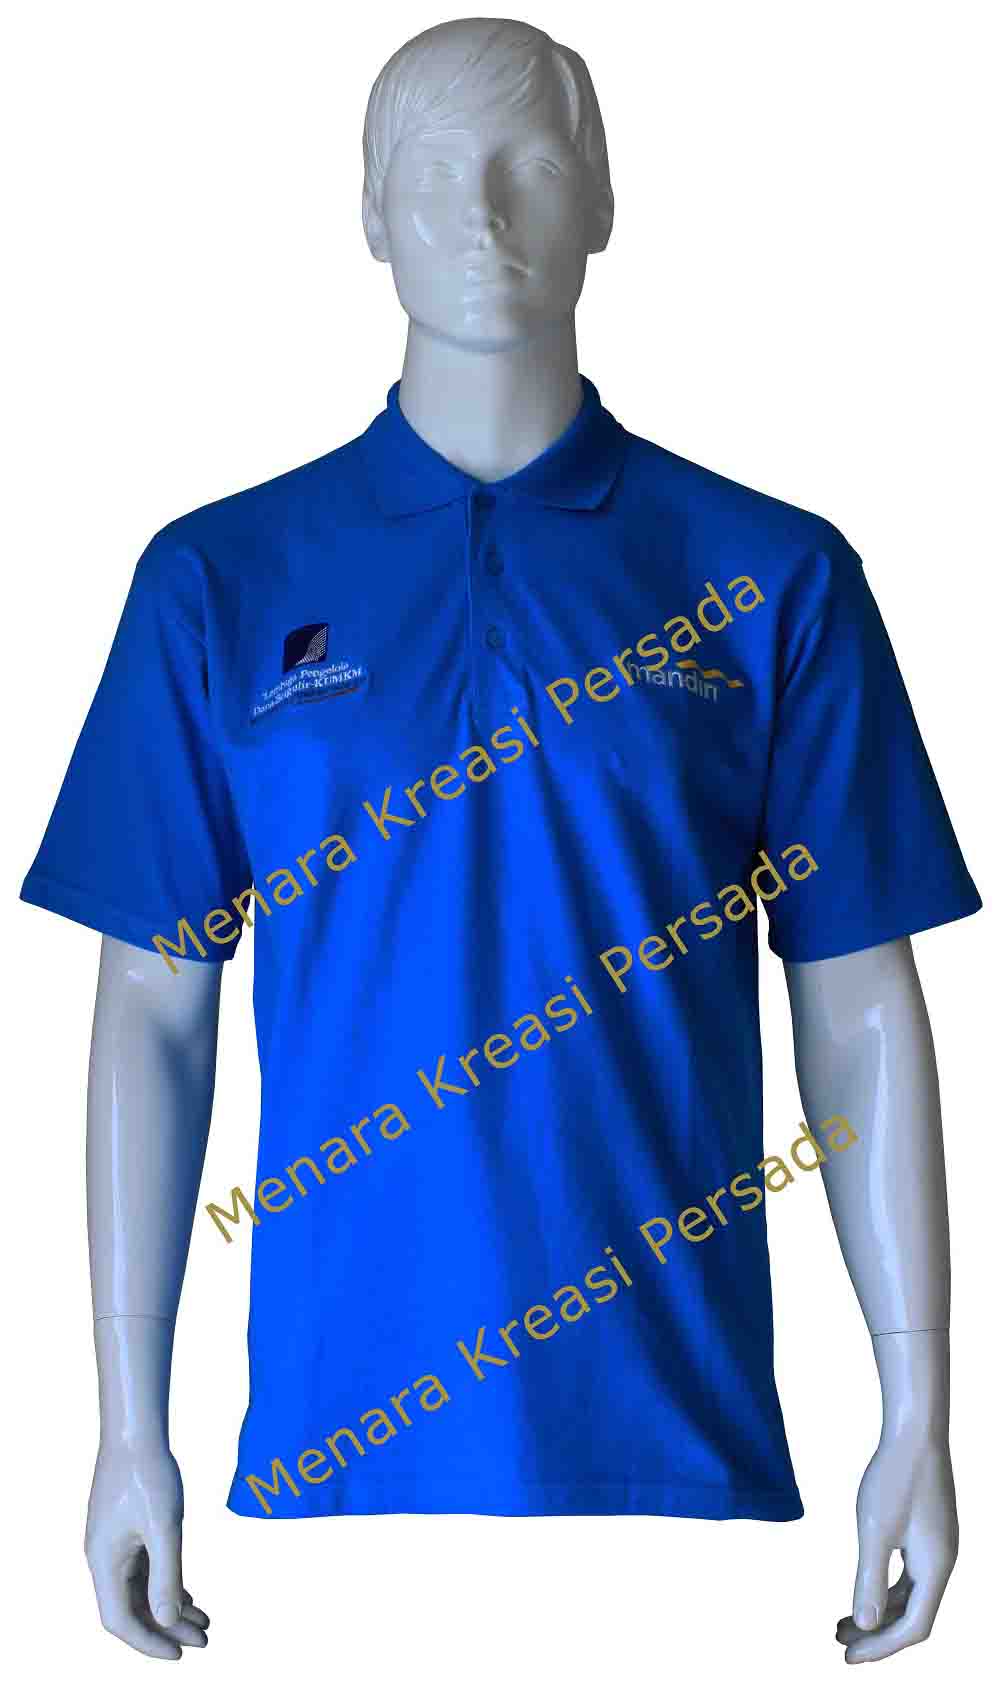 Contoh Kaos Promosi - Bank Mandiri Blue